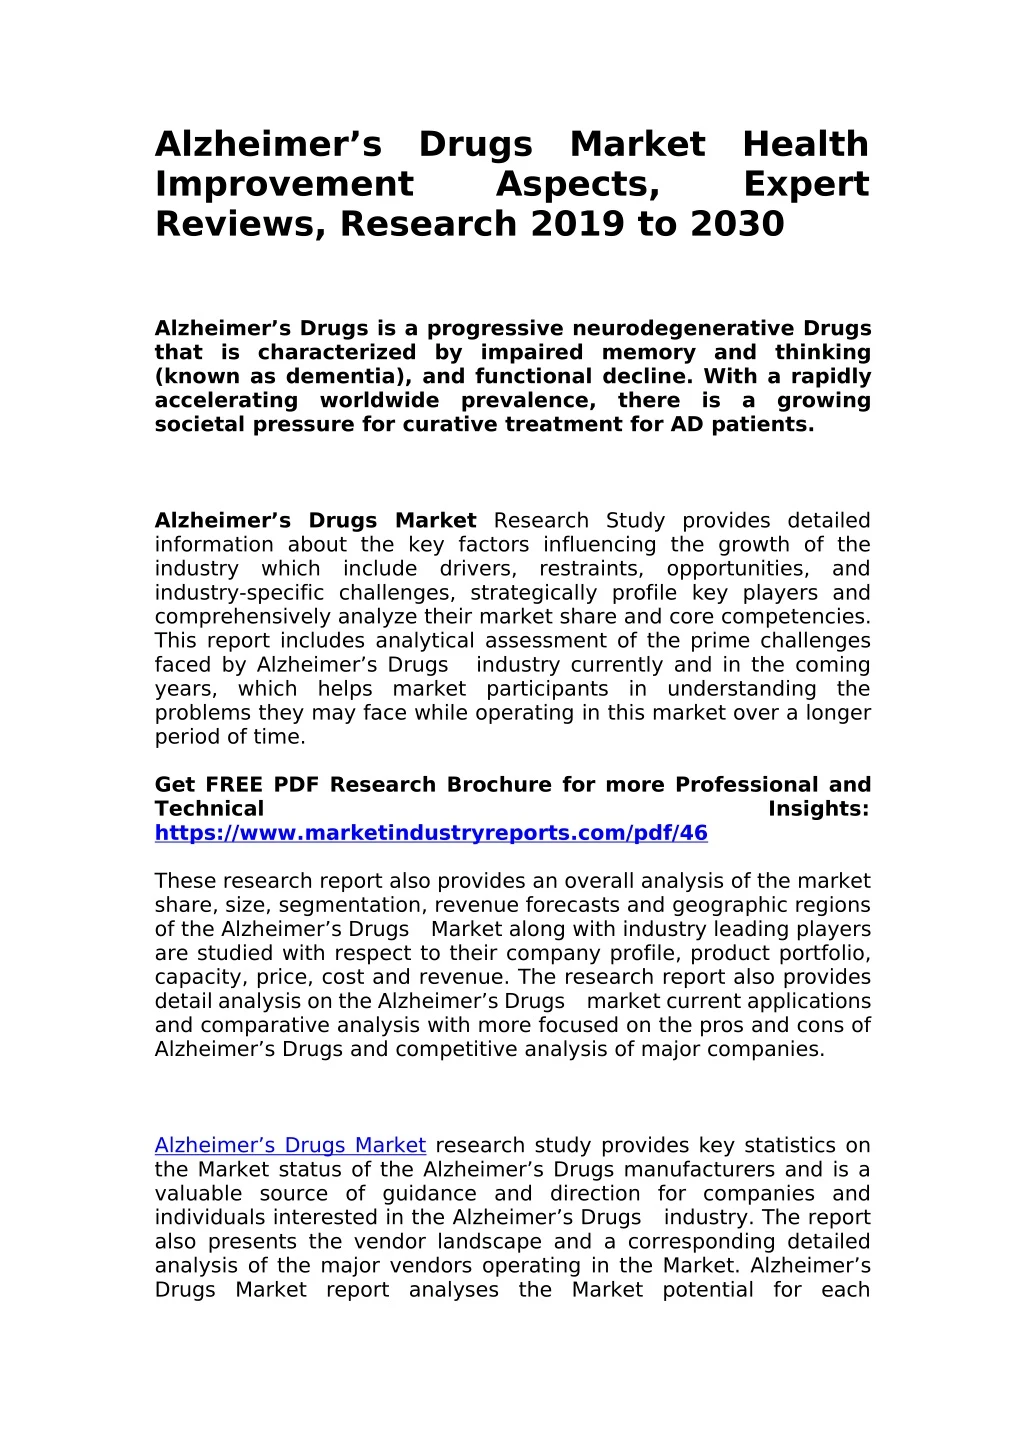 alzheimer s improvement reviews research 2019